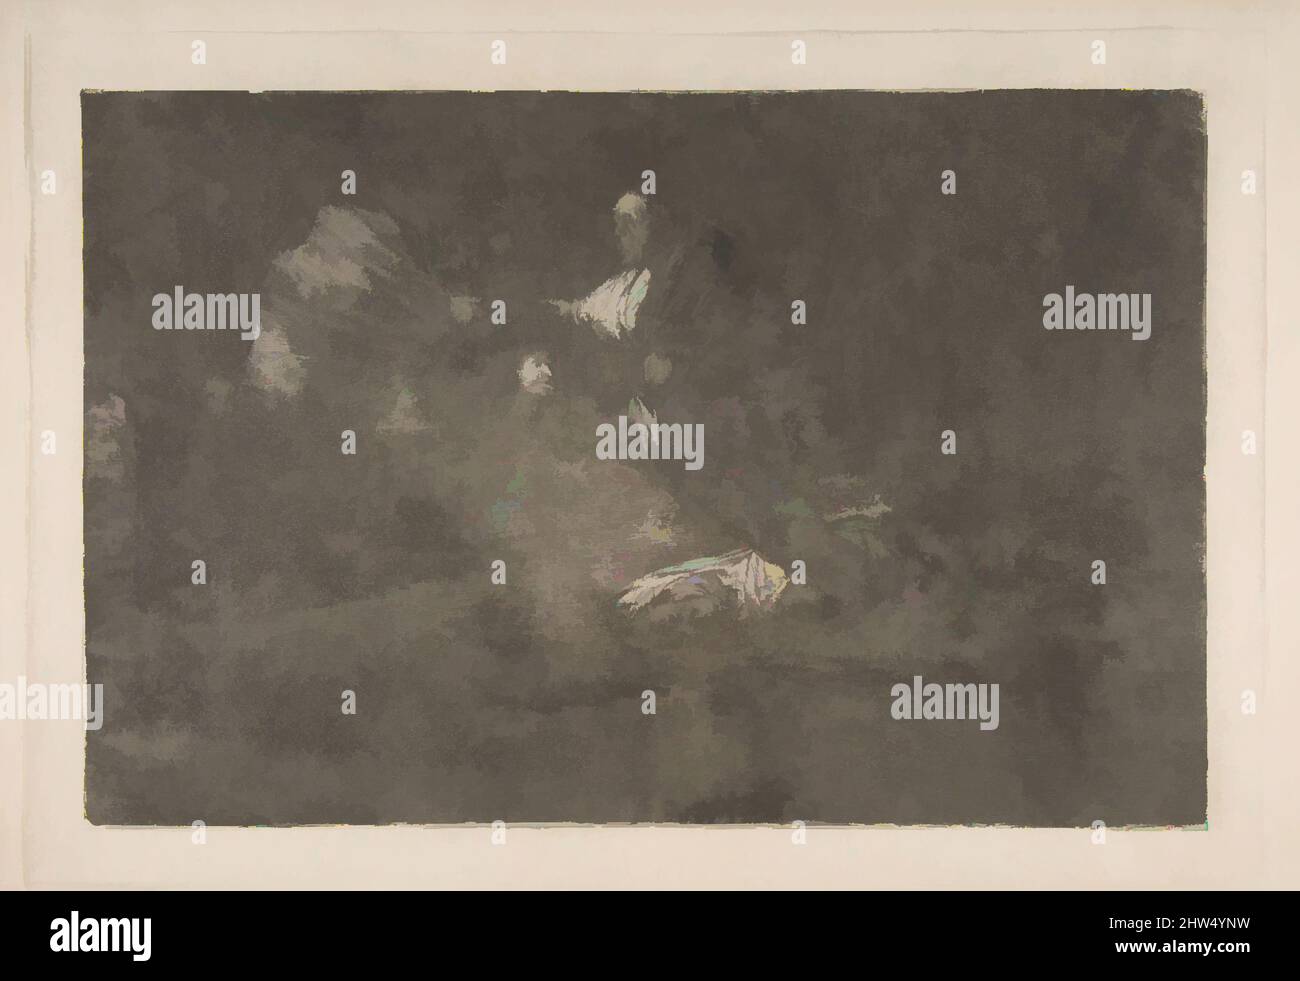 Arte ispirata dal piatto 18 dei 'Disparati':Uccelli di un gregge di piume insieme, ca. 1816–23 (stampa privata CA4), incisione, acquatinta brunita e burina, lastra: 9 5/8 x 13 3/4 pollici (24,5 x 35 cm), Prints, Goya (Francisco de Goya y Lucientes) (spagnolo, Fuendetodos 1746–1828 Bordeaux, opere classiche modernizzate da Artotop con un tuffo di modernità. Forme, colore e valore, impatto visivo accattivante sulle emozioni artistiche attraverso la libertà delle opere d'arte in modo contemporaneo. Un messaggio senza tempo che persegue una nuova direzione selvaggiamente creativa. Artisti che si rivolgono al supporto digitale e creano l'NFT Artotop Foto Stock